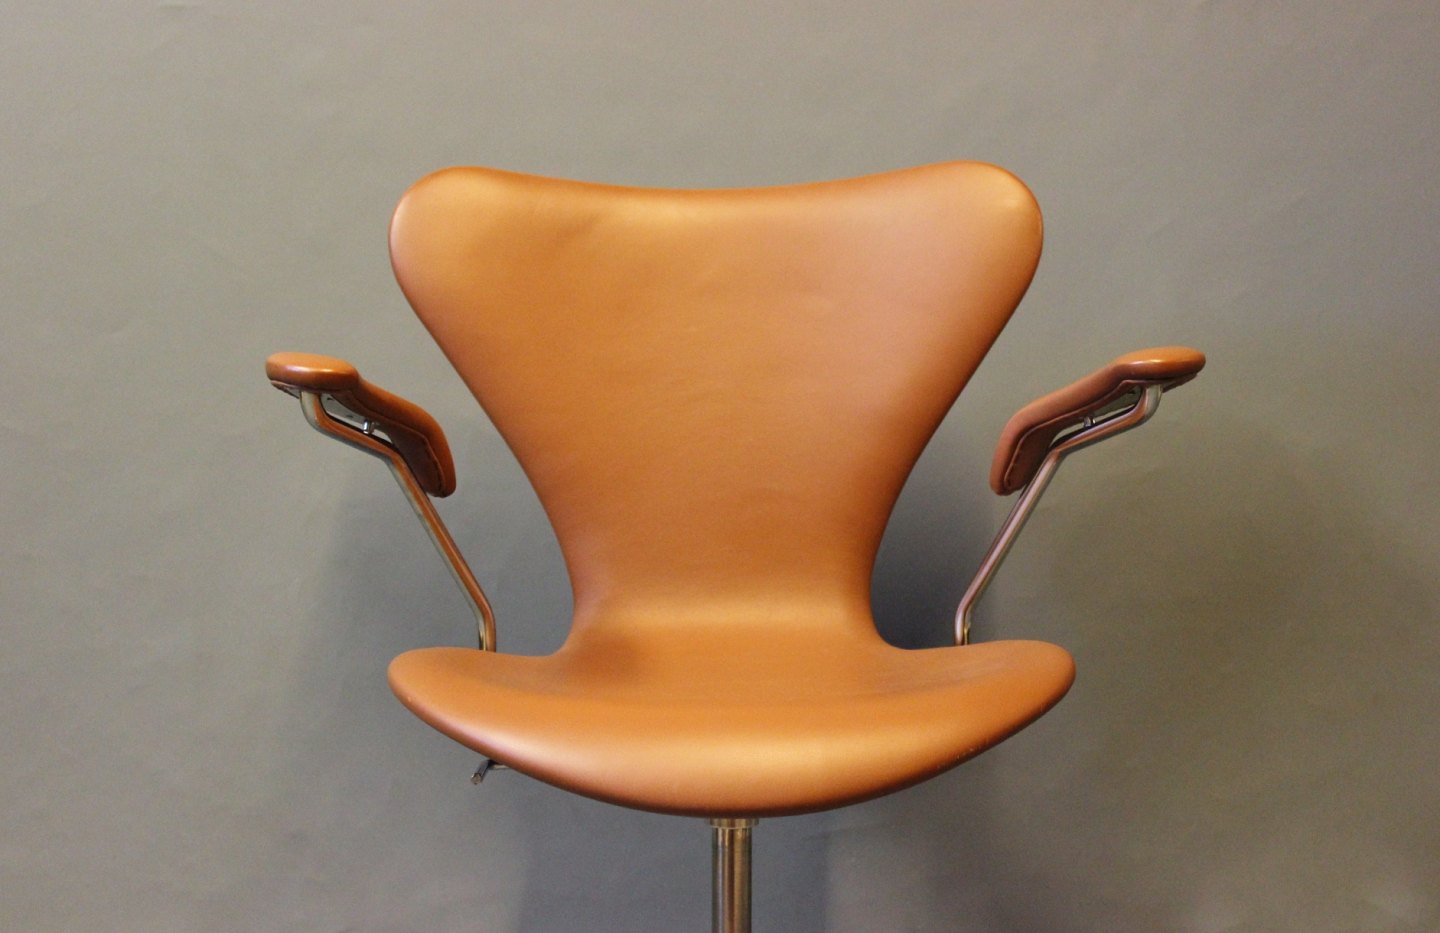 KAD ringen - 7'er kontorstol, model 3217, med armlæn og drejefunktion Arne Jacobsen og Fri - 7'er model 3217, med armlæn og drejefunktion af Arne Jacobsen og Fri